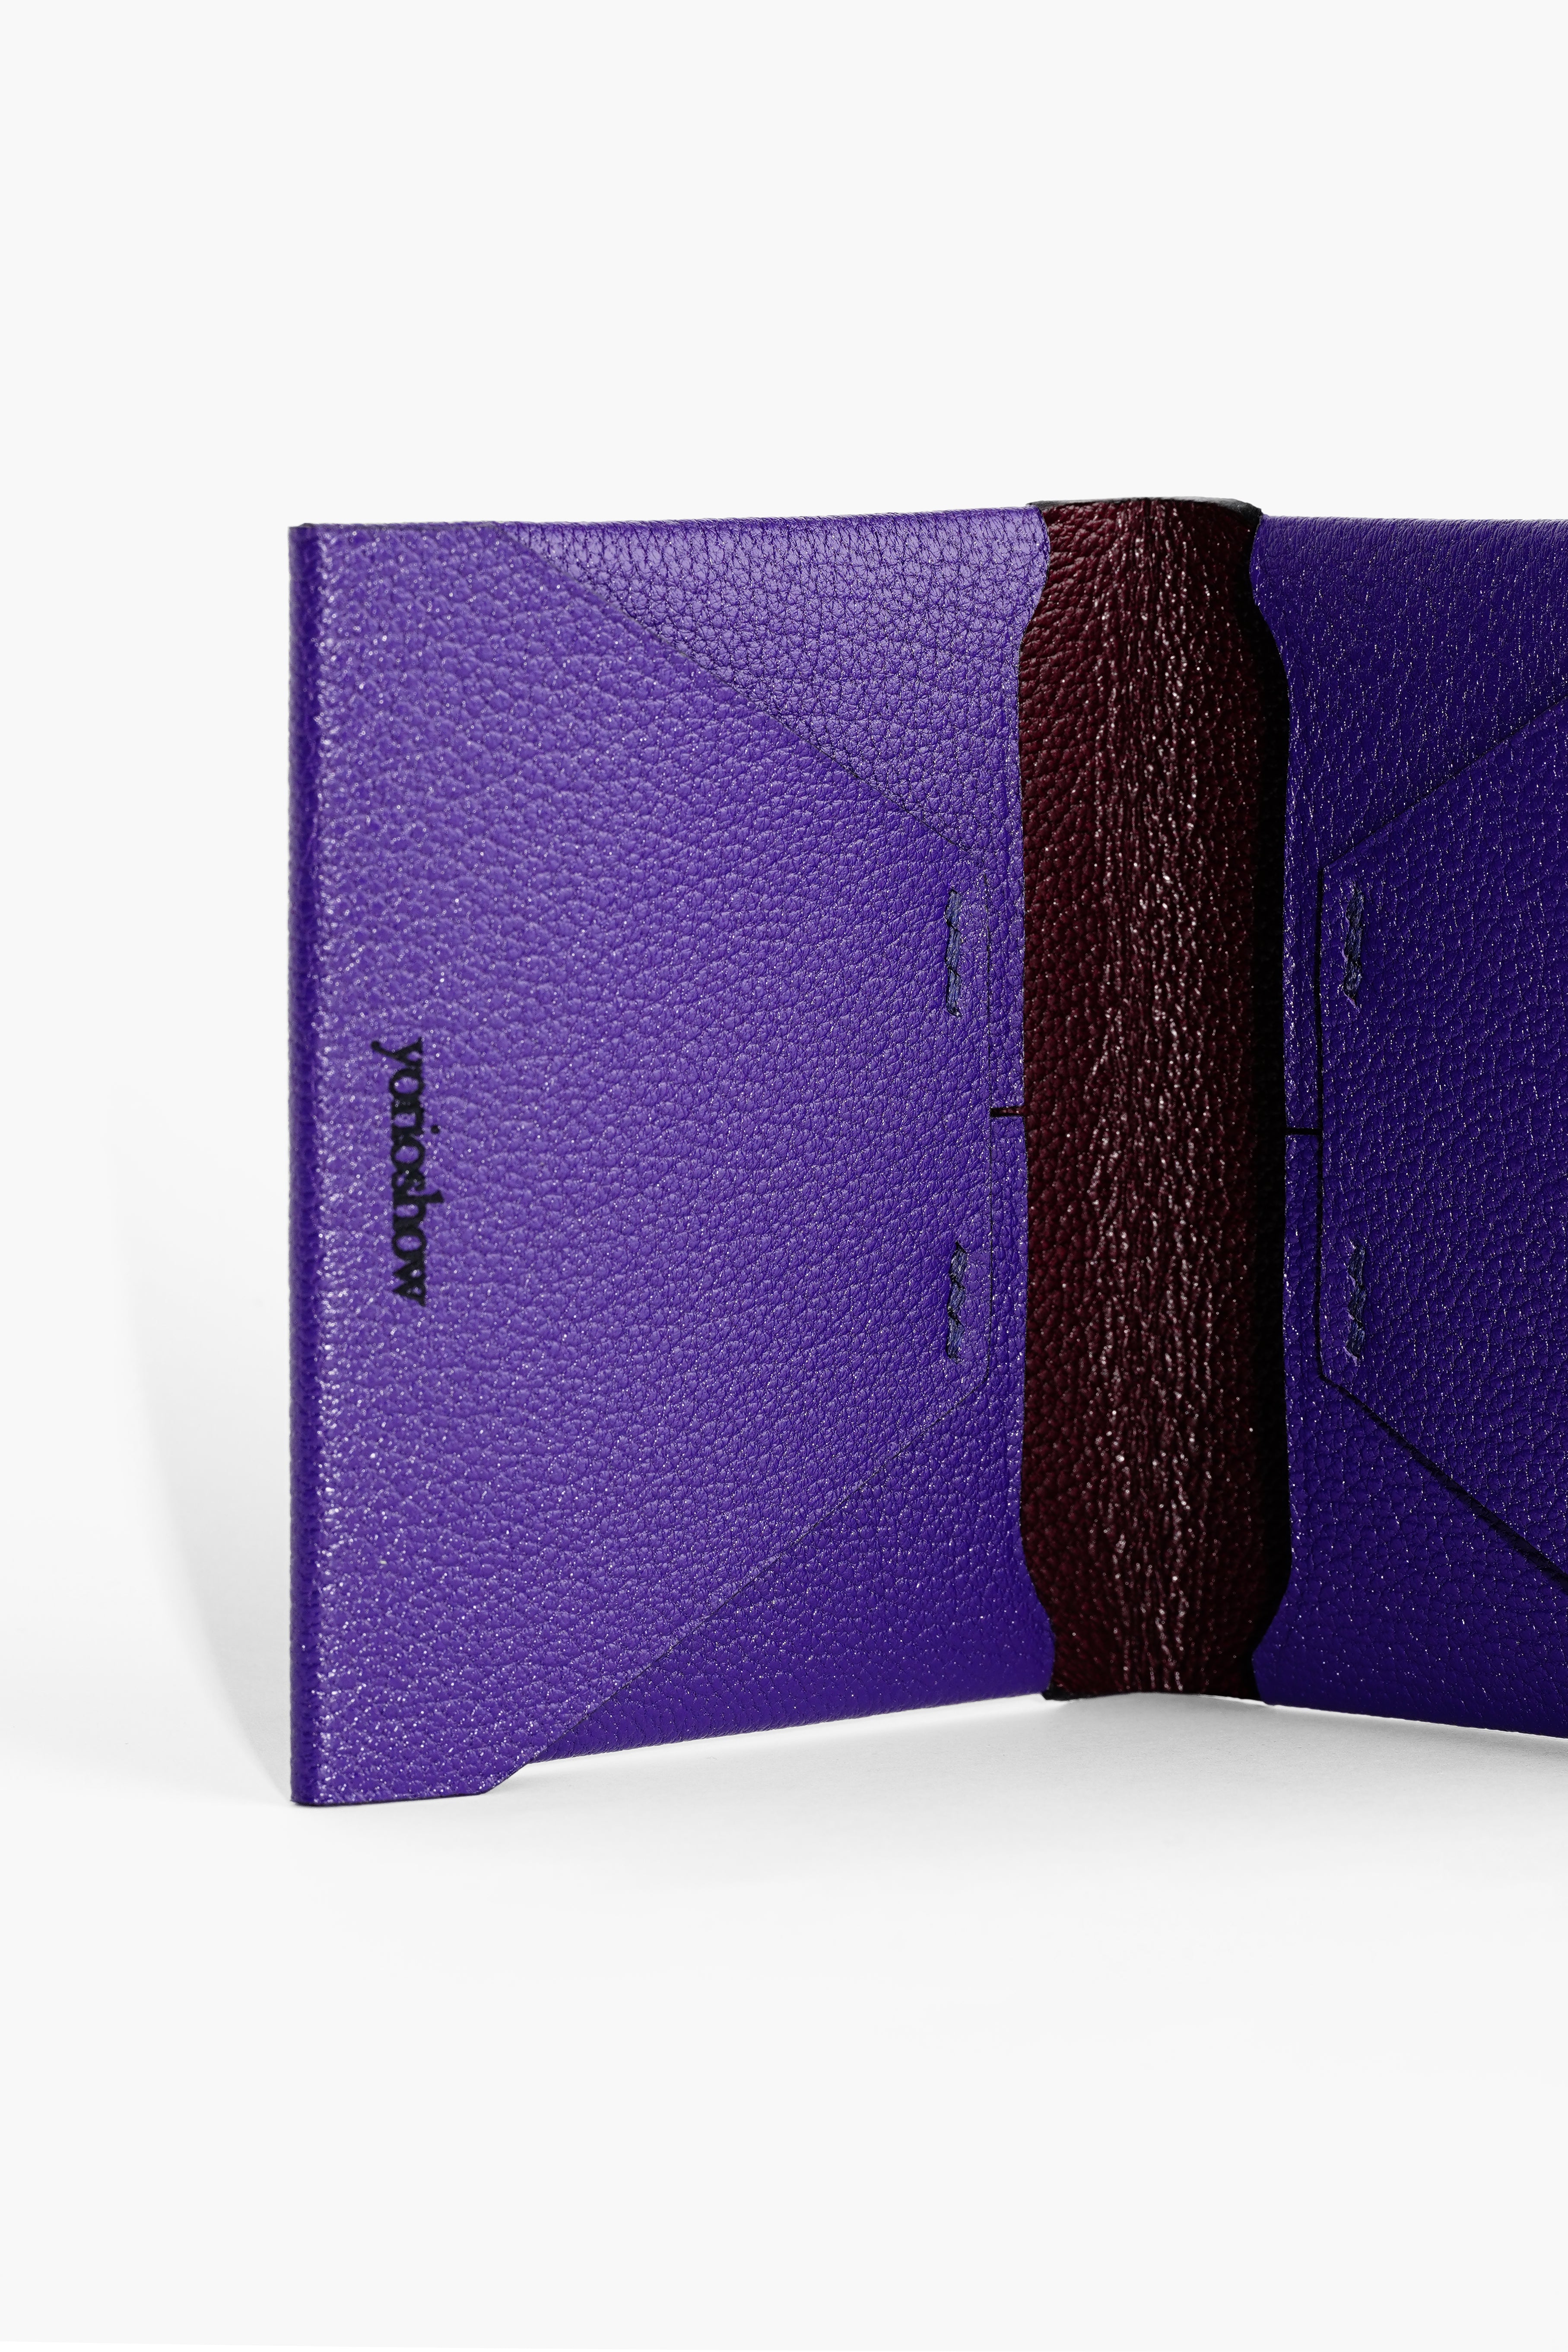 Compact wallet【Morceau】Compact wallet/wallet – yorioshow